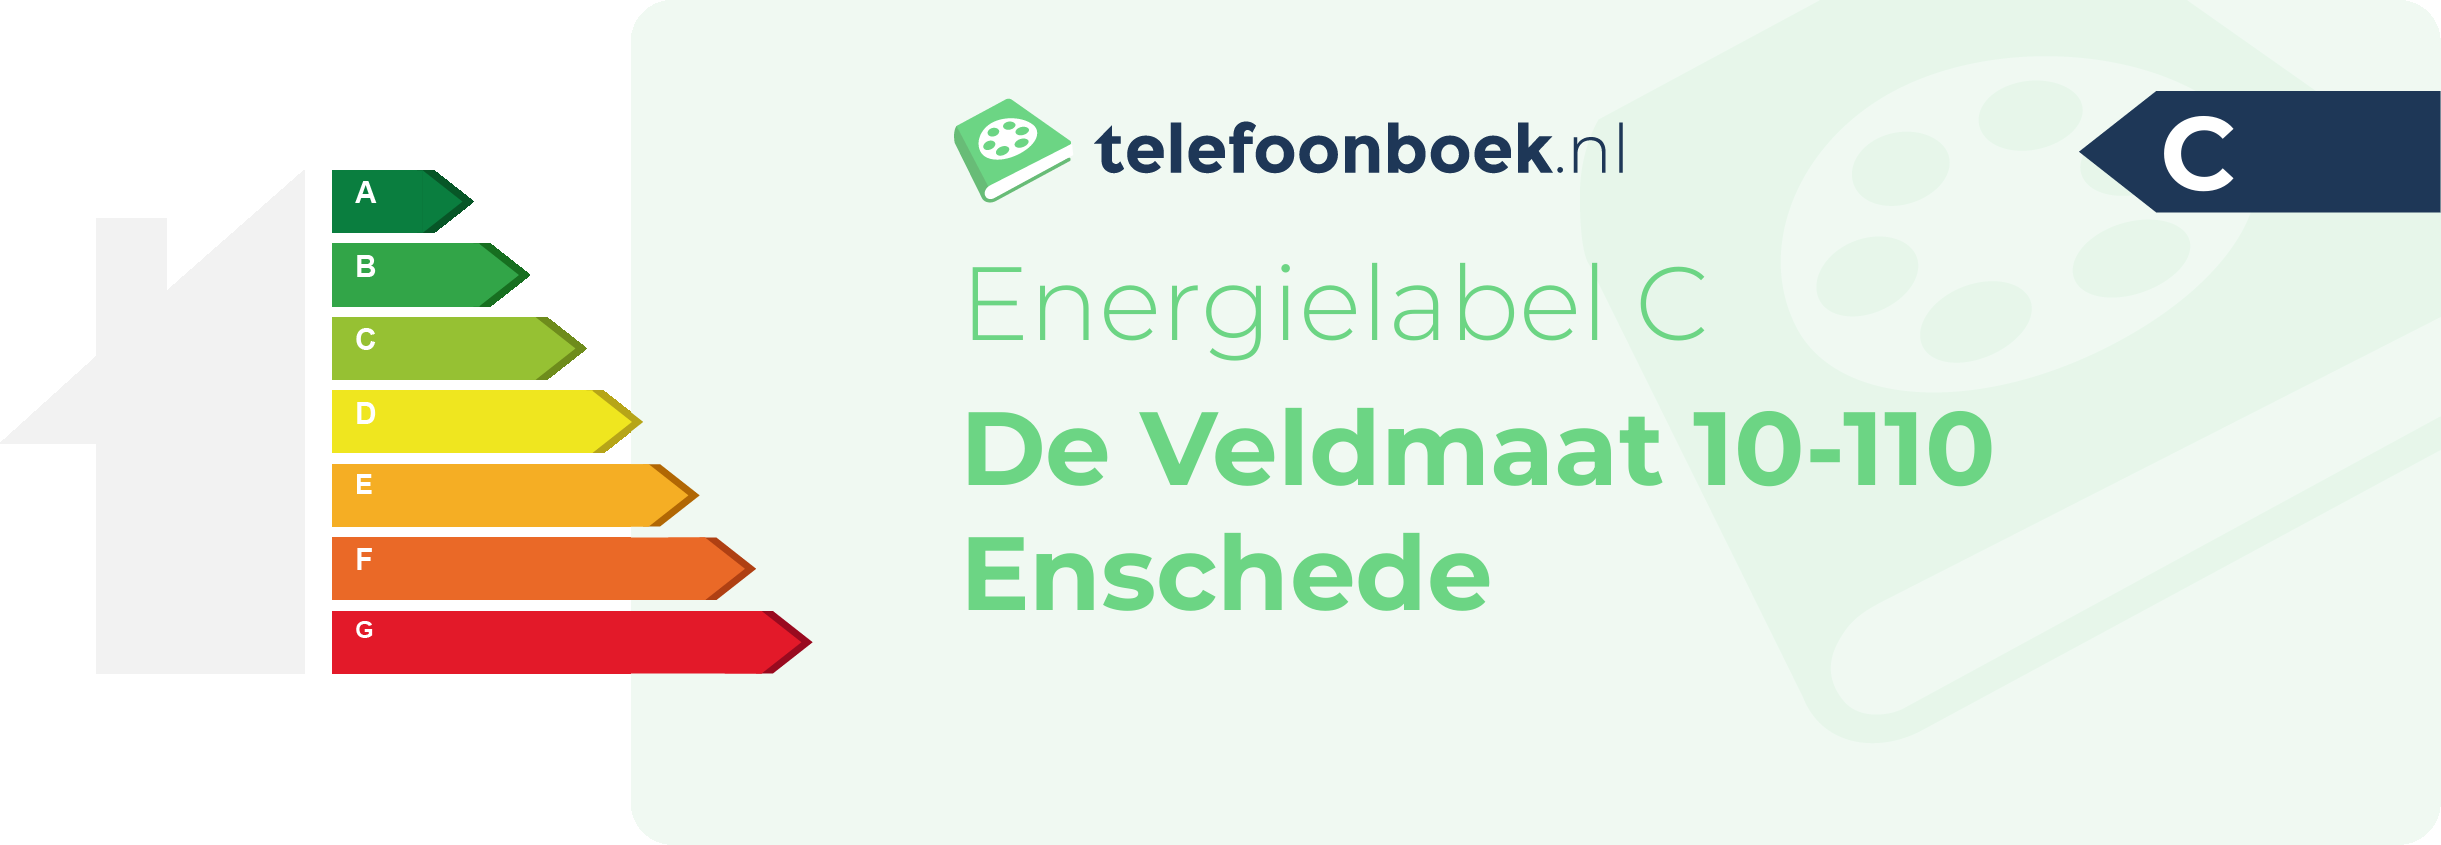 Energielabel De Veldmaat 10-110 Enschede